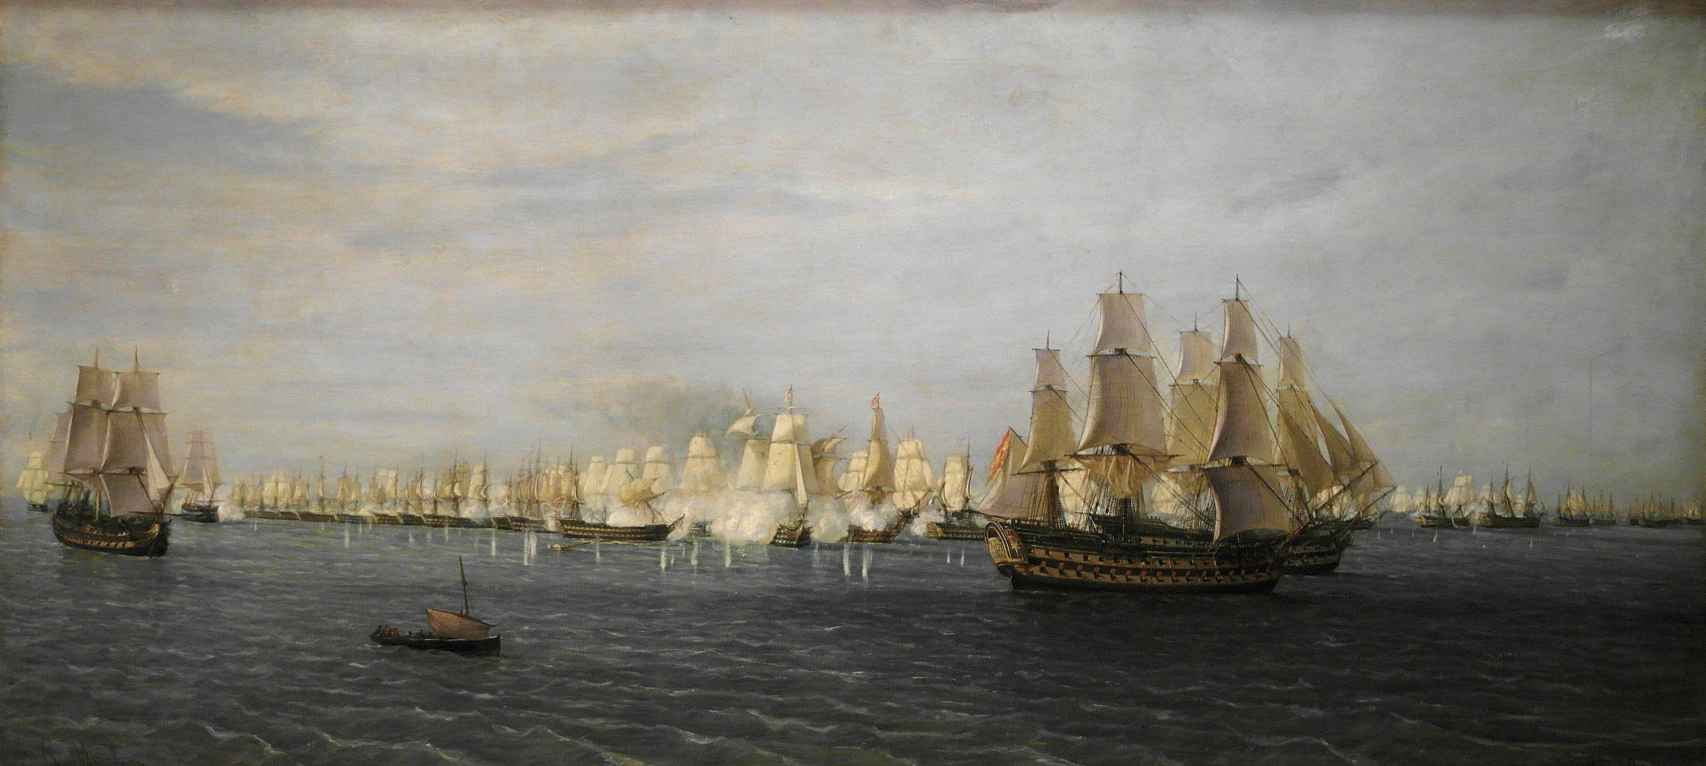 'Inicio del combate en Trafalgar: el HMS Royal Sovereign se bate con el navío español Santa Ana' (1856), óleo sobre lienzo de James Wilson Carmichael. Colección privada.